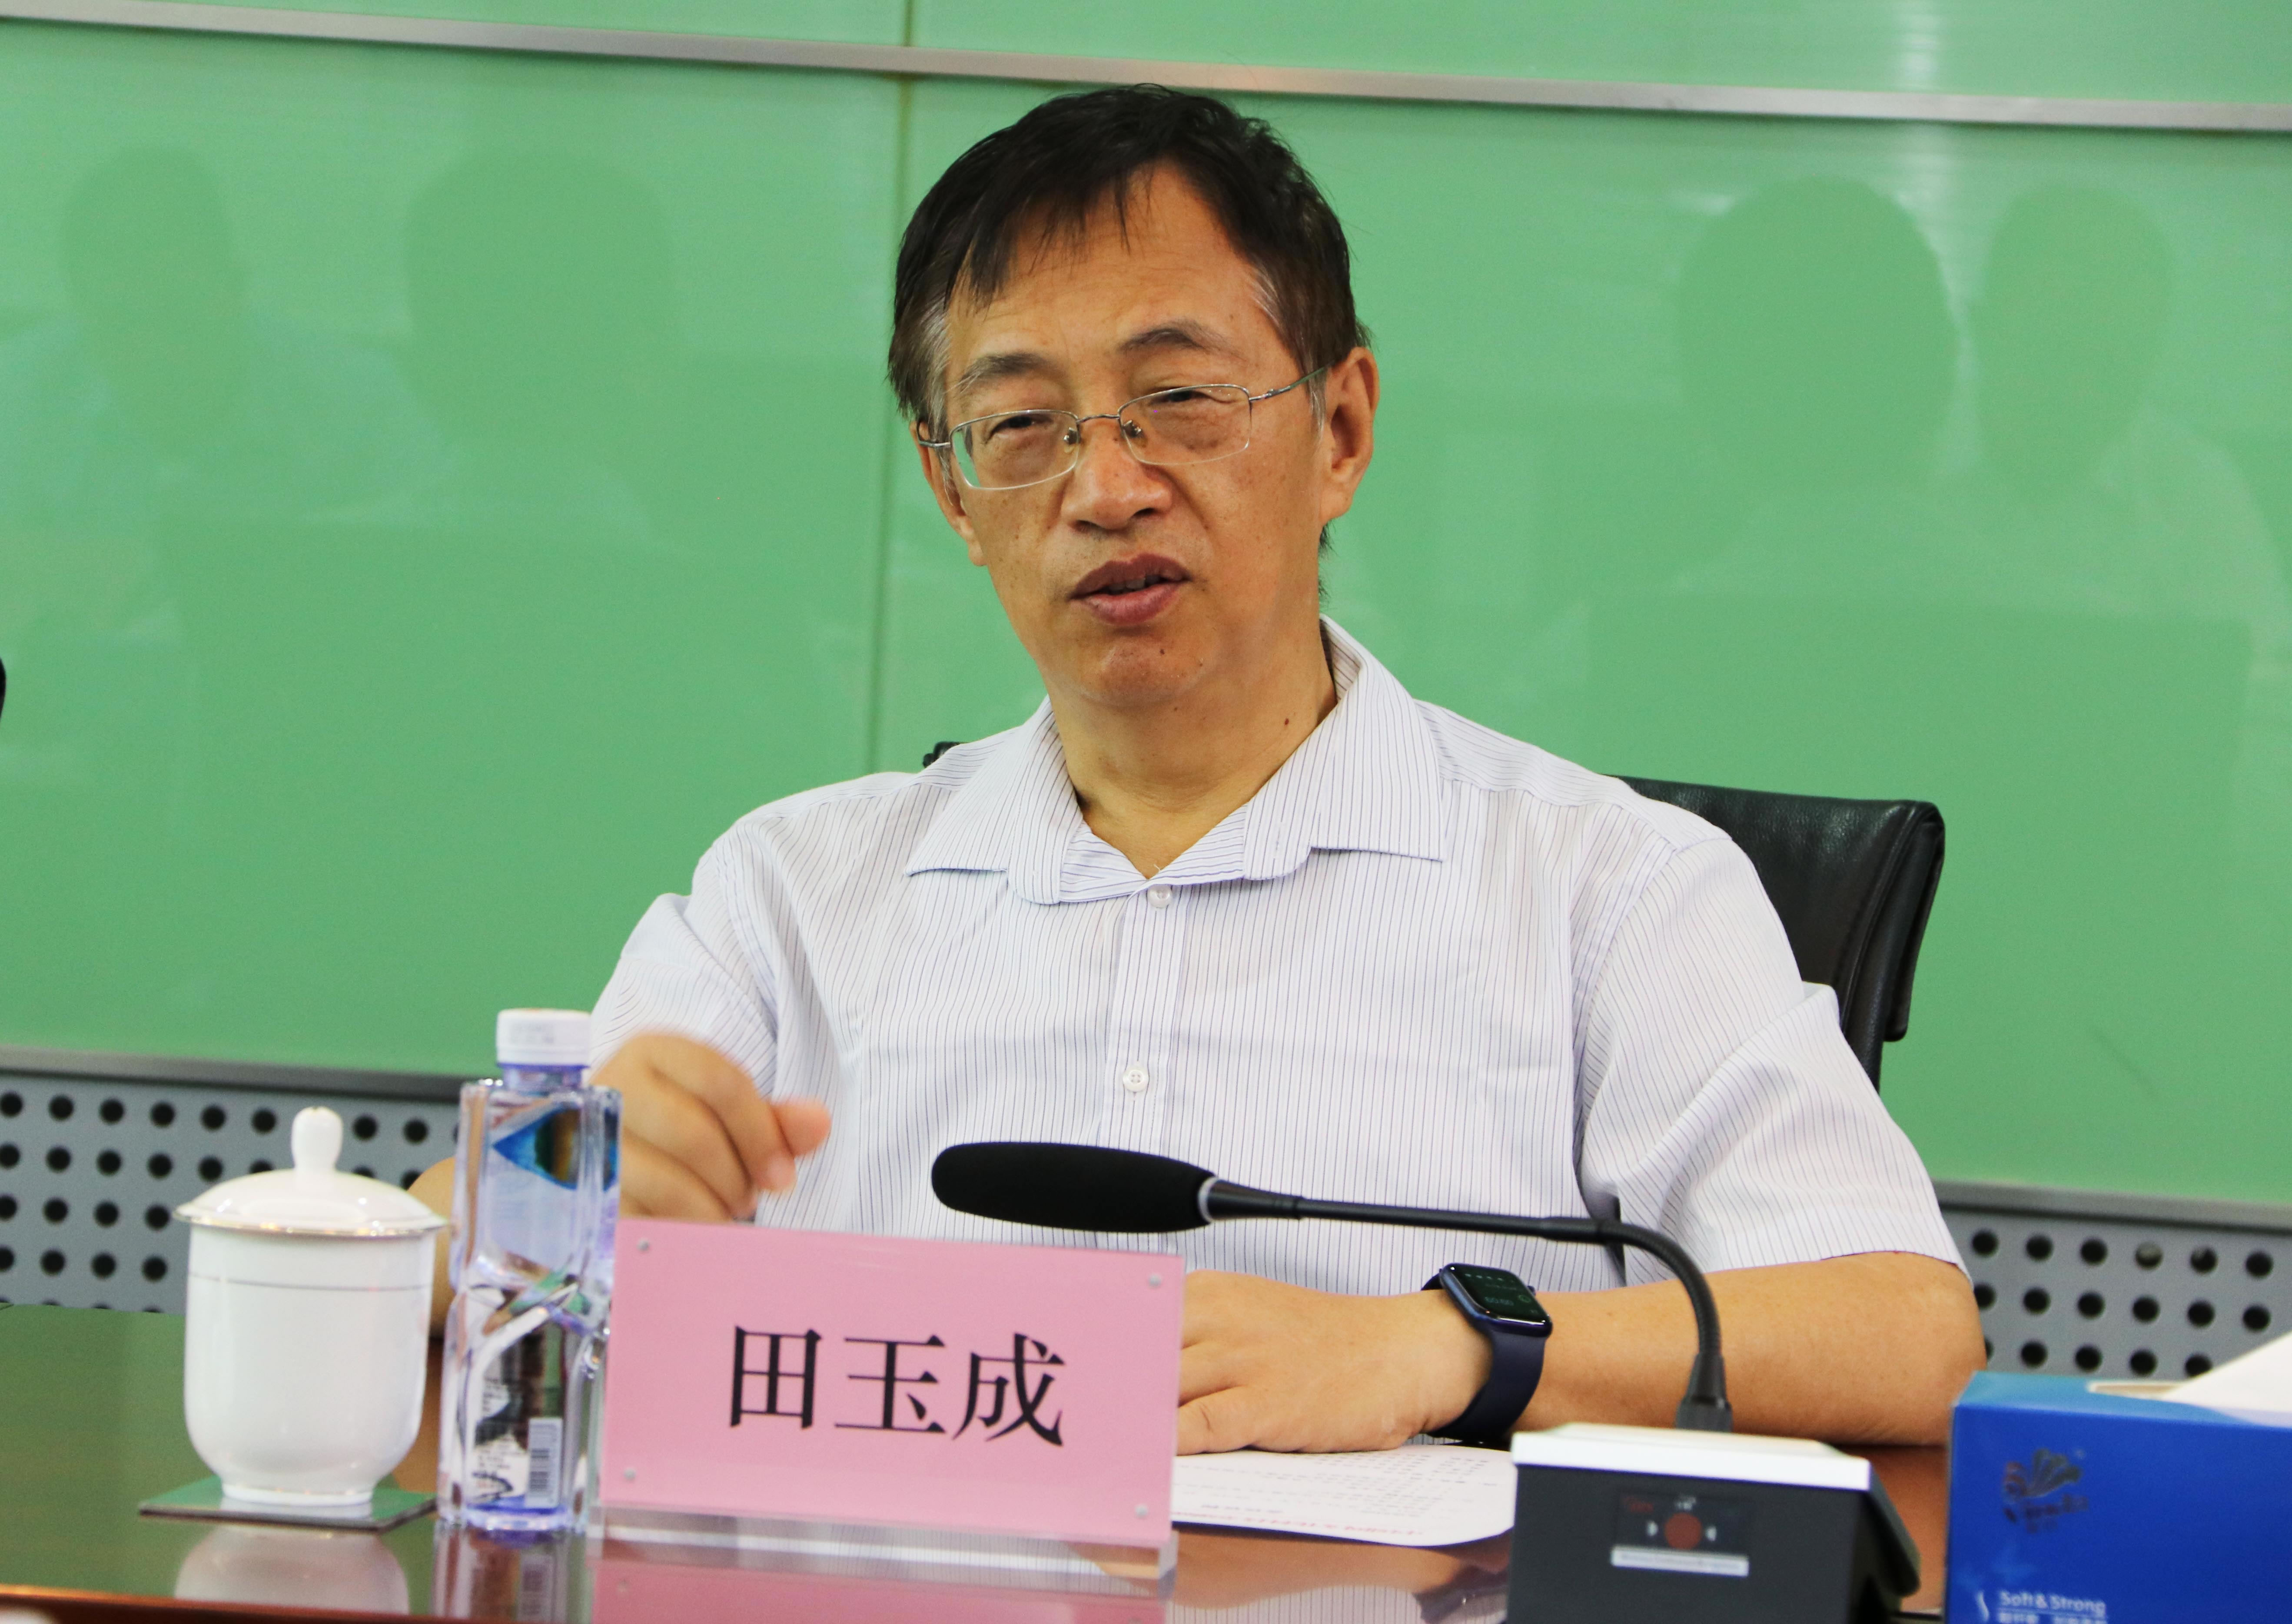 首先,北京时间中国网科技有限公司董事长田玉成,总经理谢金明对来访的